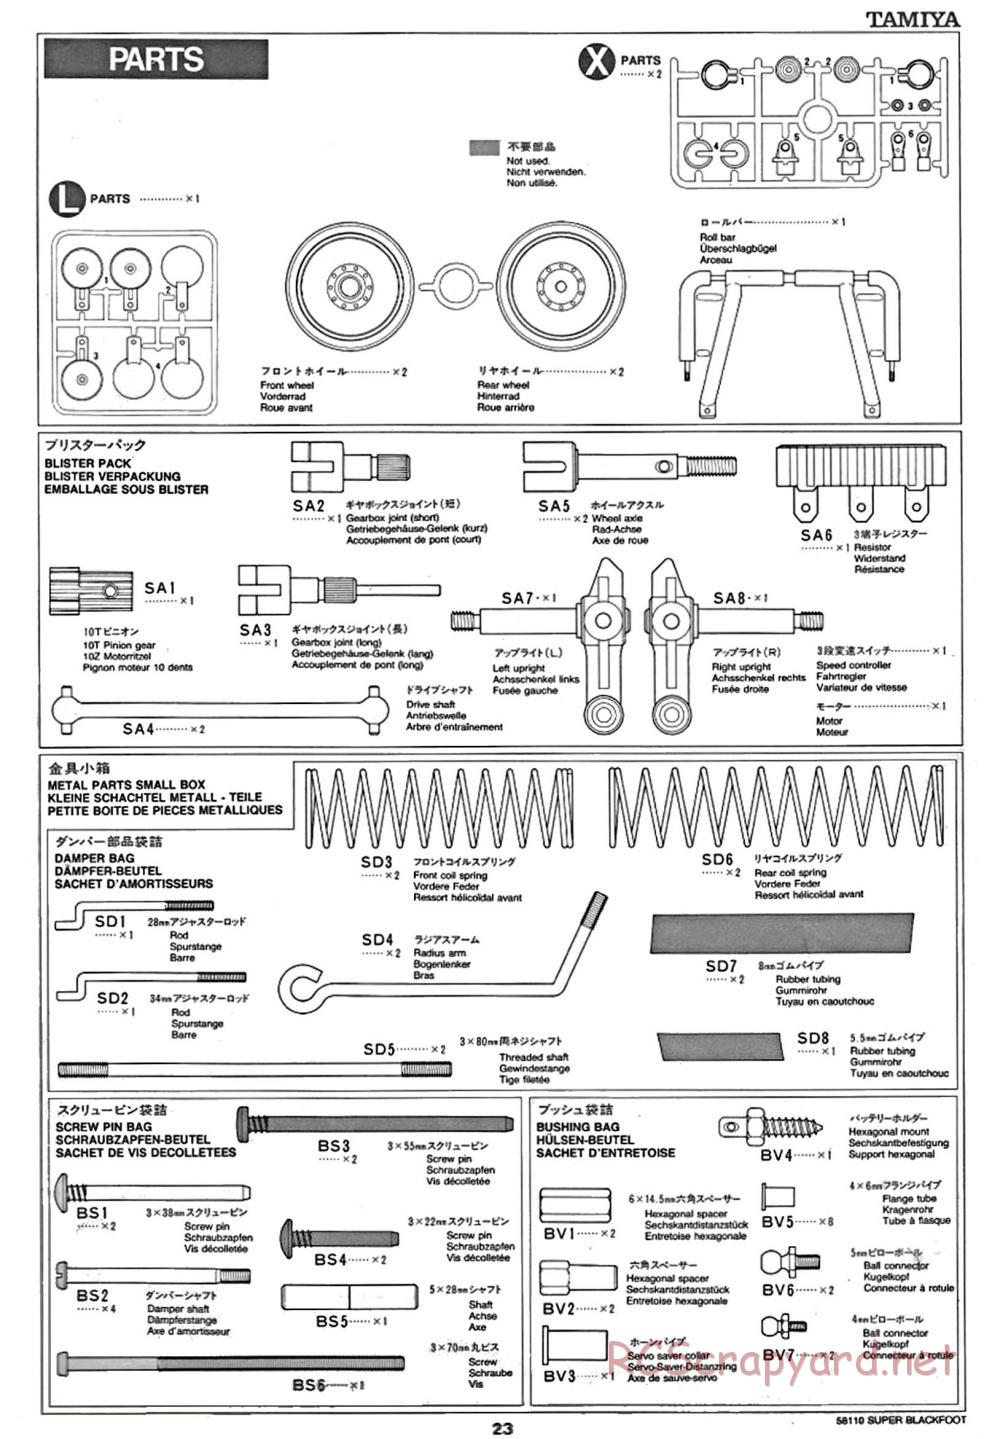 Tamiya - Super Blackfoot Chassis - Manual - Page 23